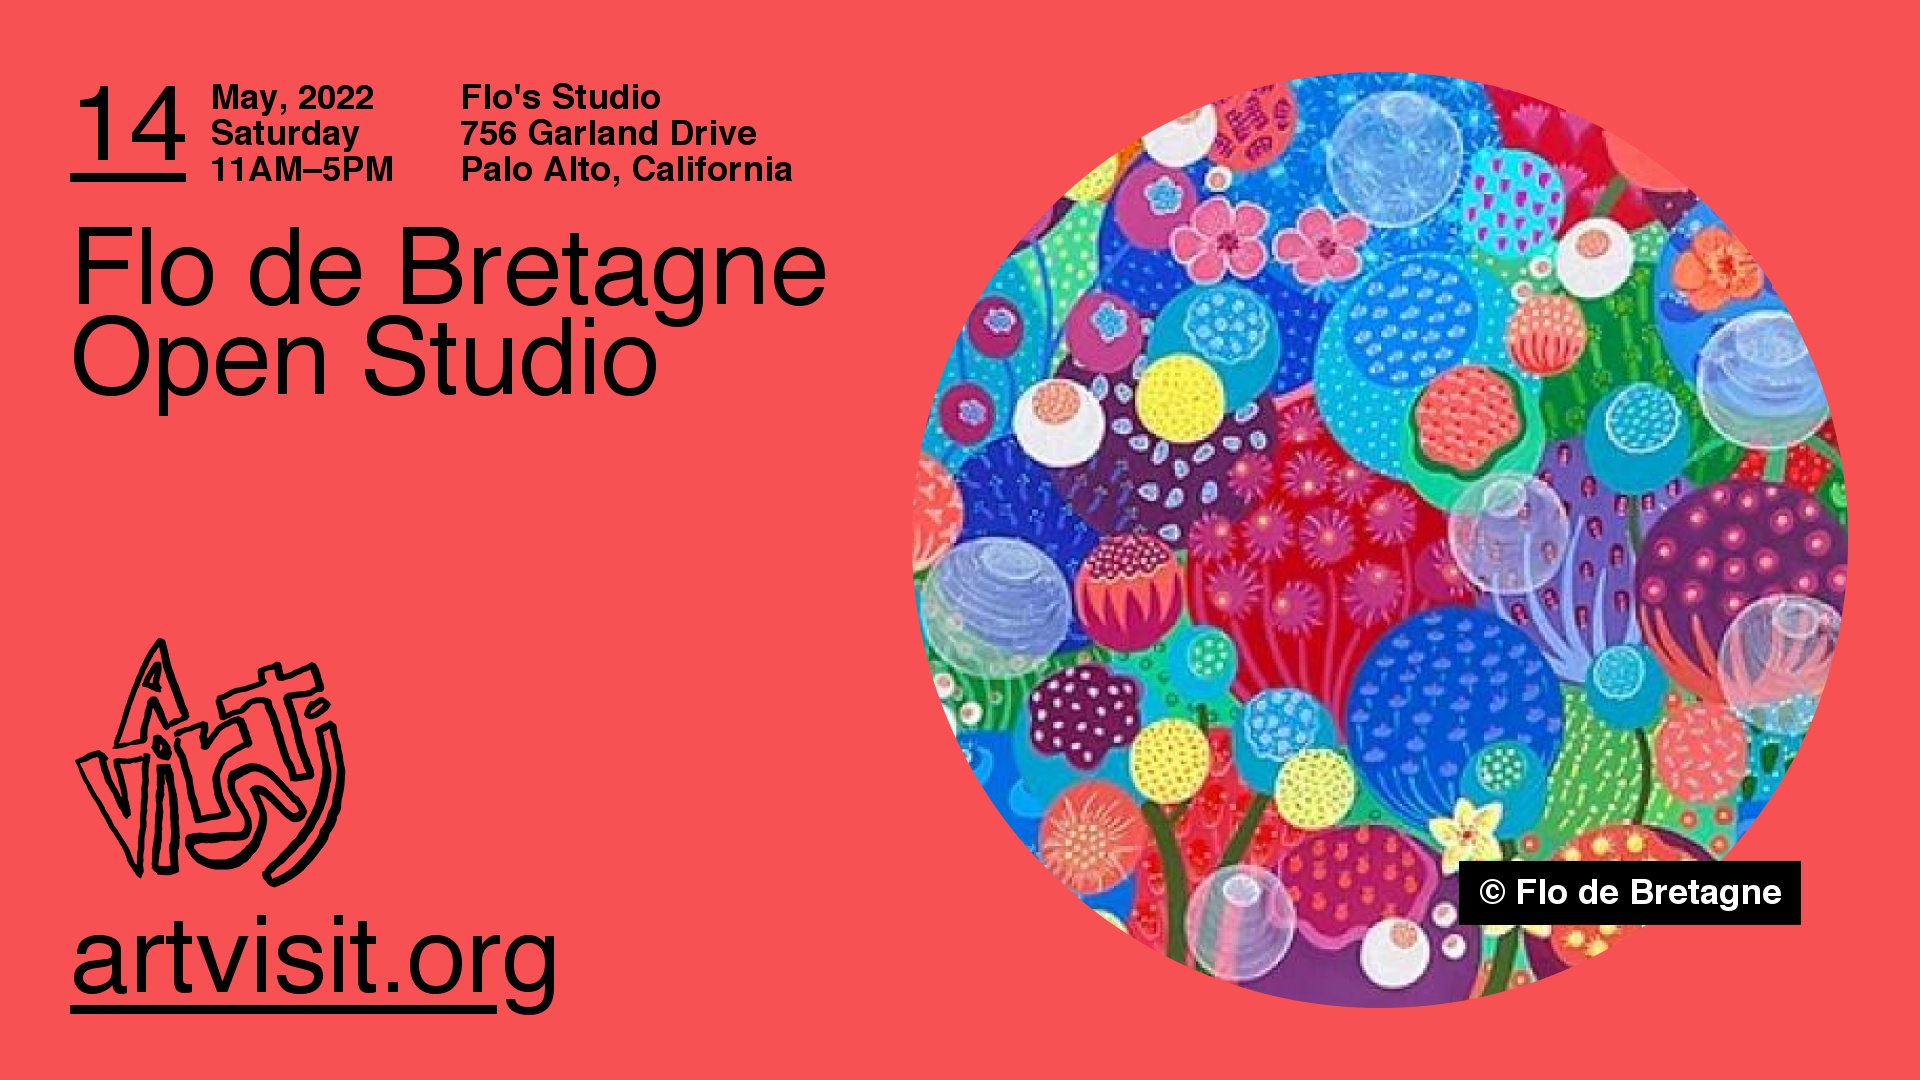 Flo de Bretagne Open Studio